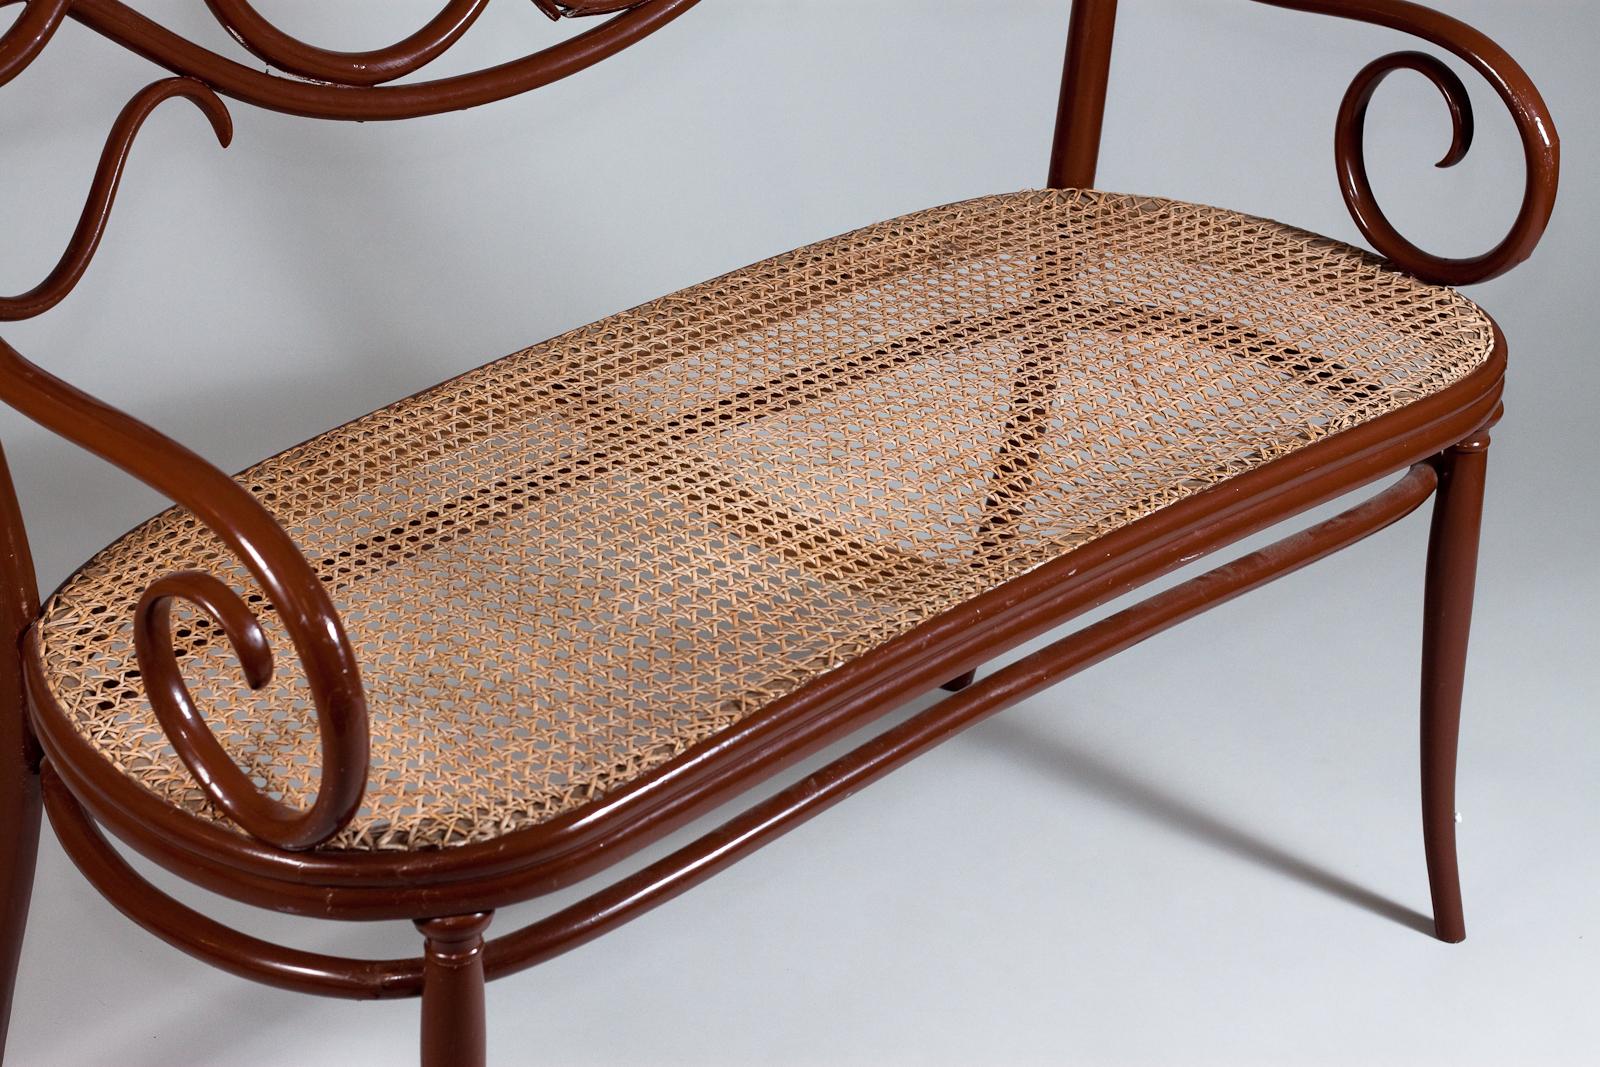 Le canapé en bois courbé Thonet No. 2, fabriqué à la fin du 19e siècle, est une magnifique pièce vintage qui respire l'élégance et la sophistication. Ce canapé est entièrement construit en bois courbé et conserve son assise en rotin tressé